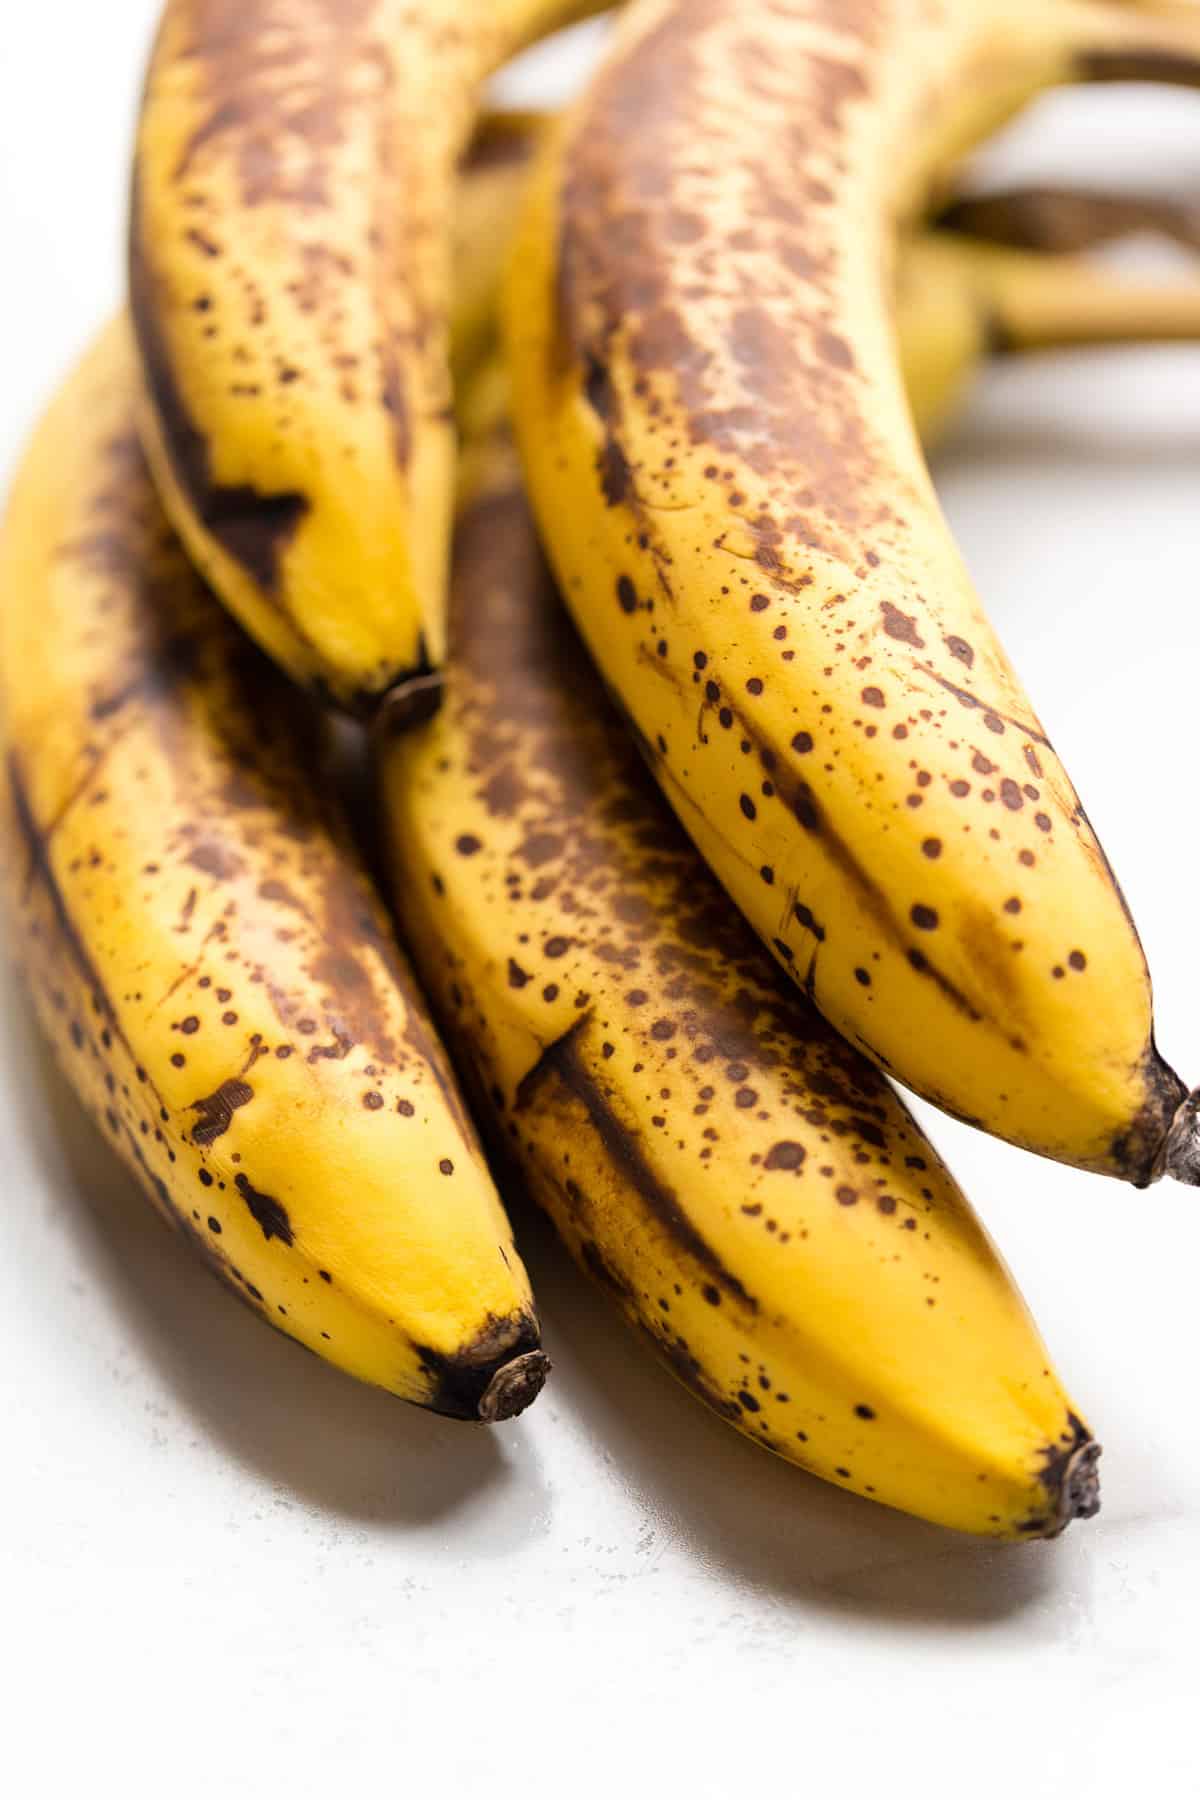 Heavily speckled over ripe bananas for making vegan banana bread.